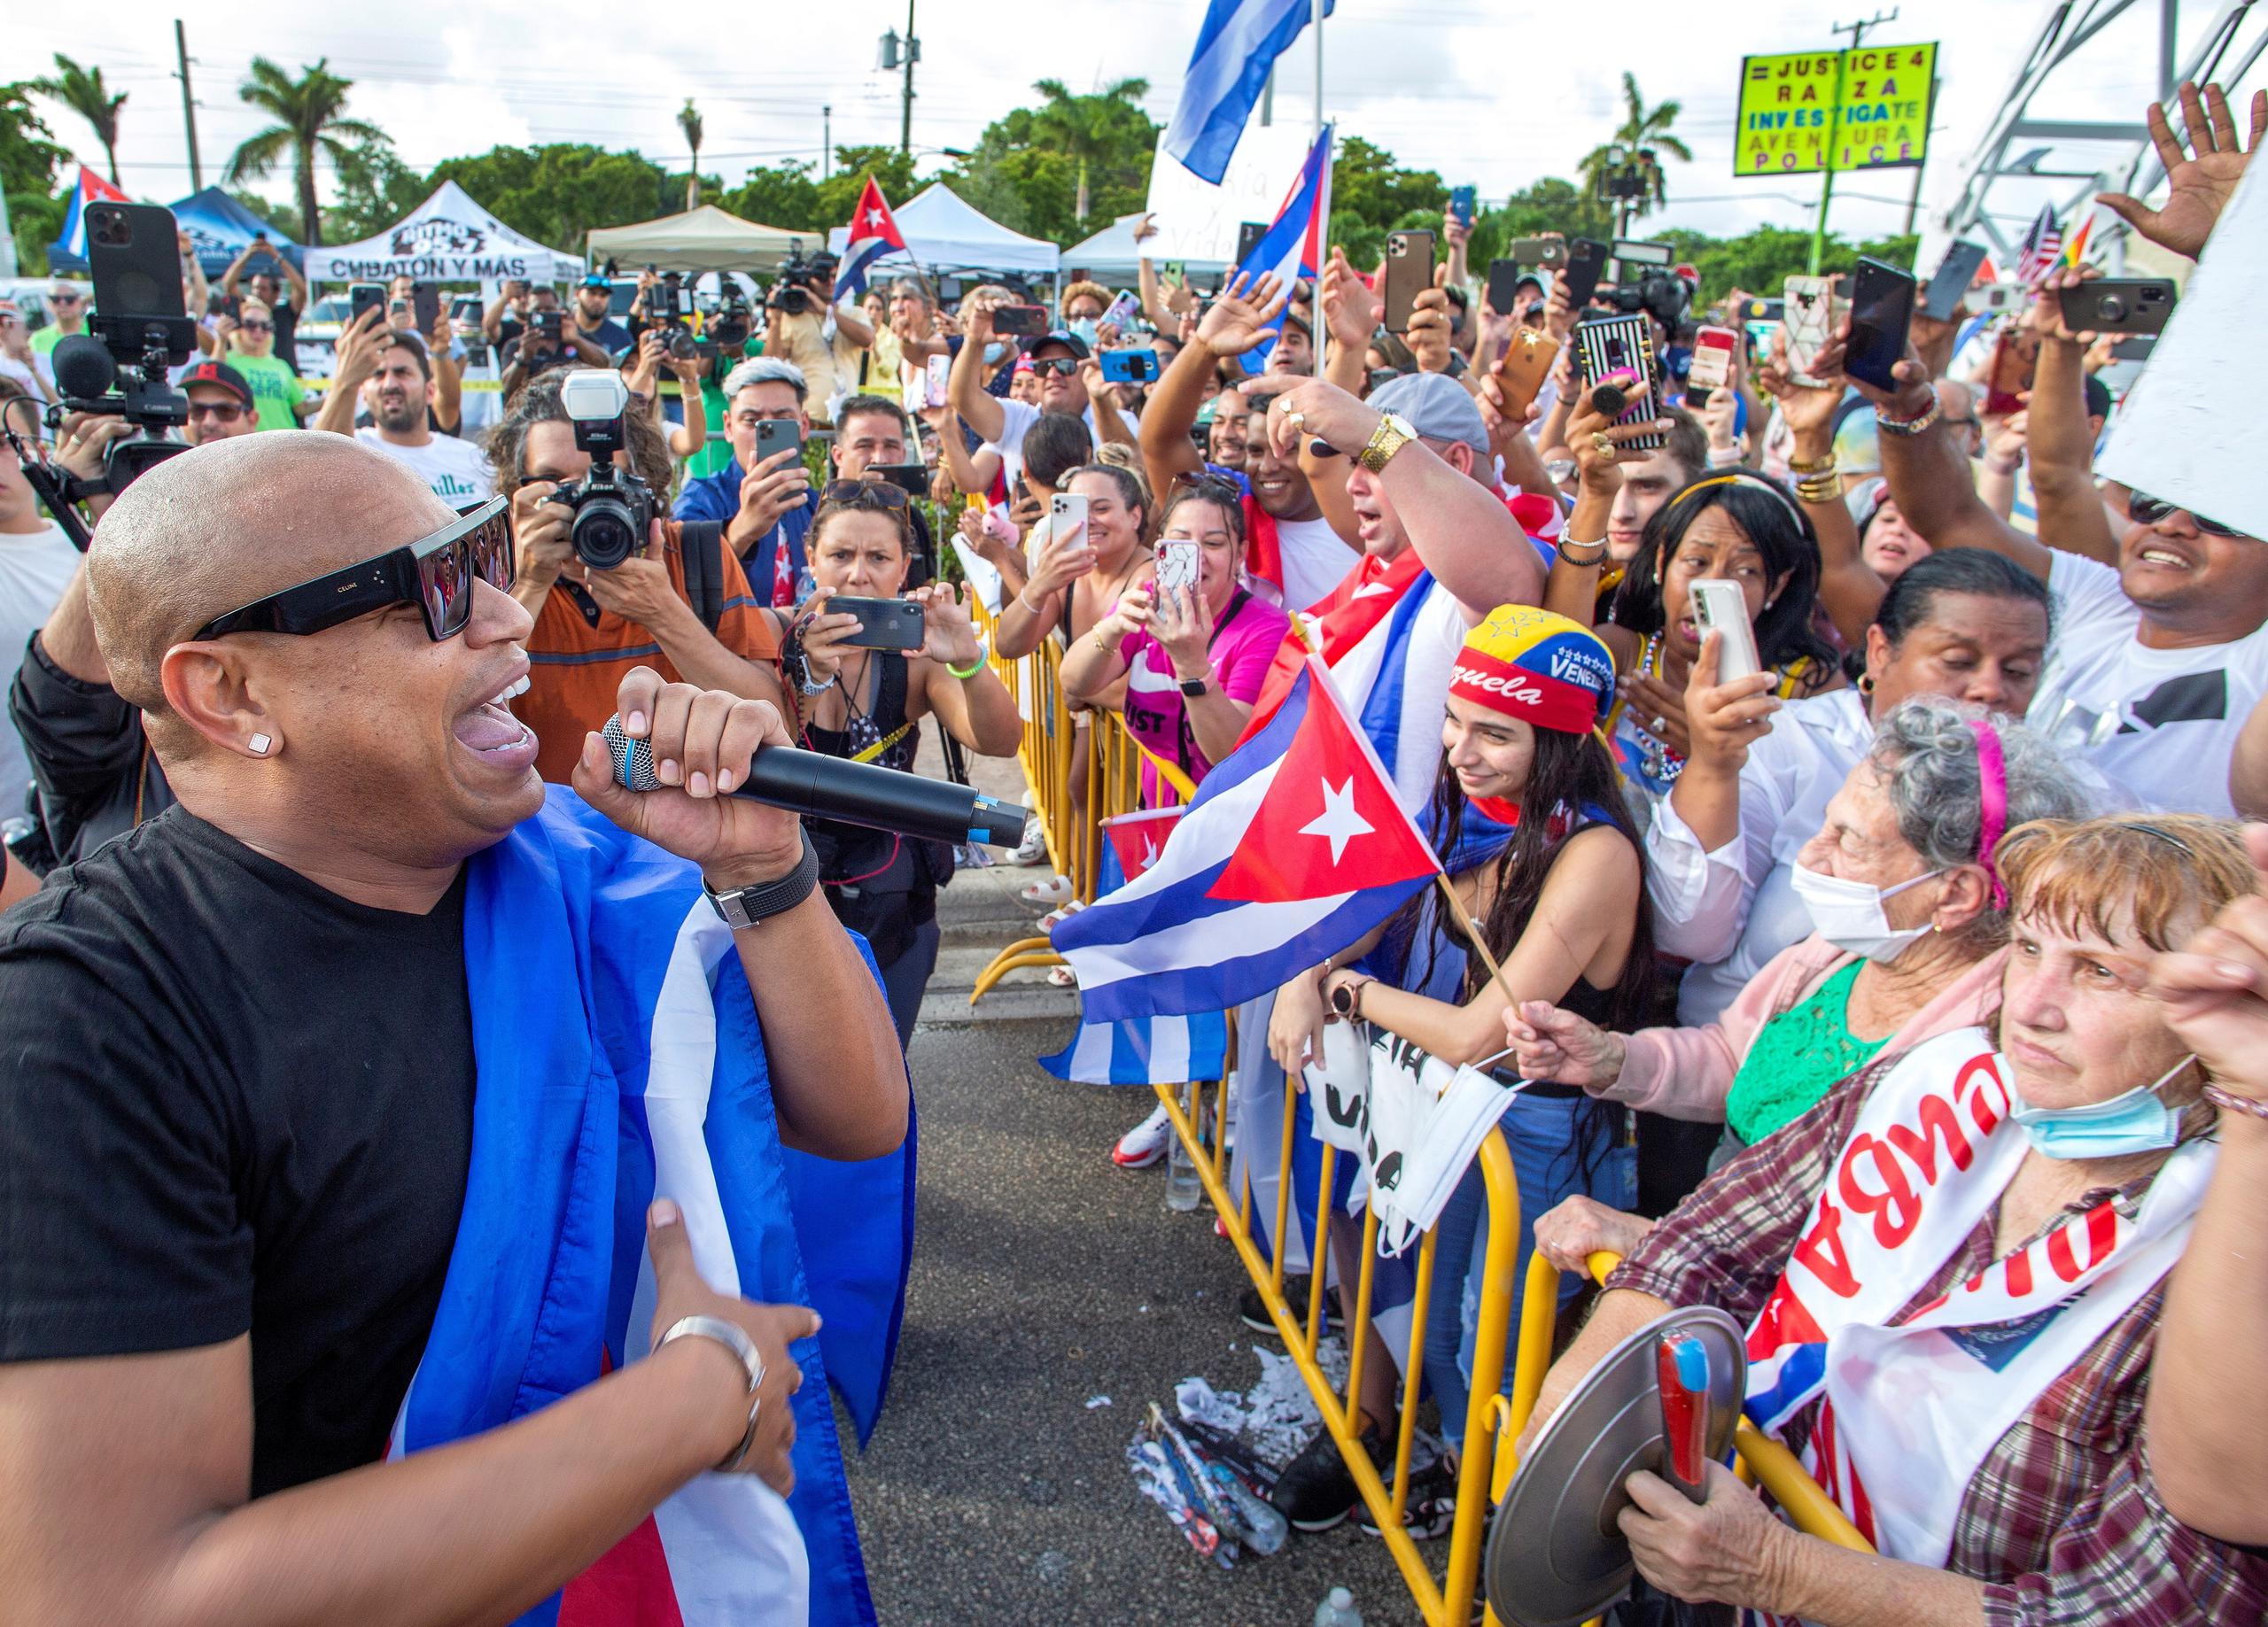 Alexander Delgado, integrante de la banda cubana "Gente de Zona", cantó durante la protesta de apoyo a los manifestantes en Cuba, frente al Restaurante Versailles en Miami, el pasado lunes.